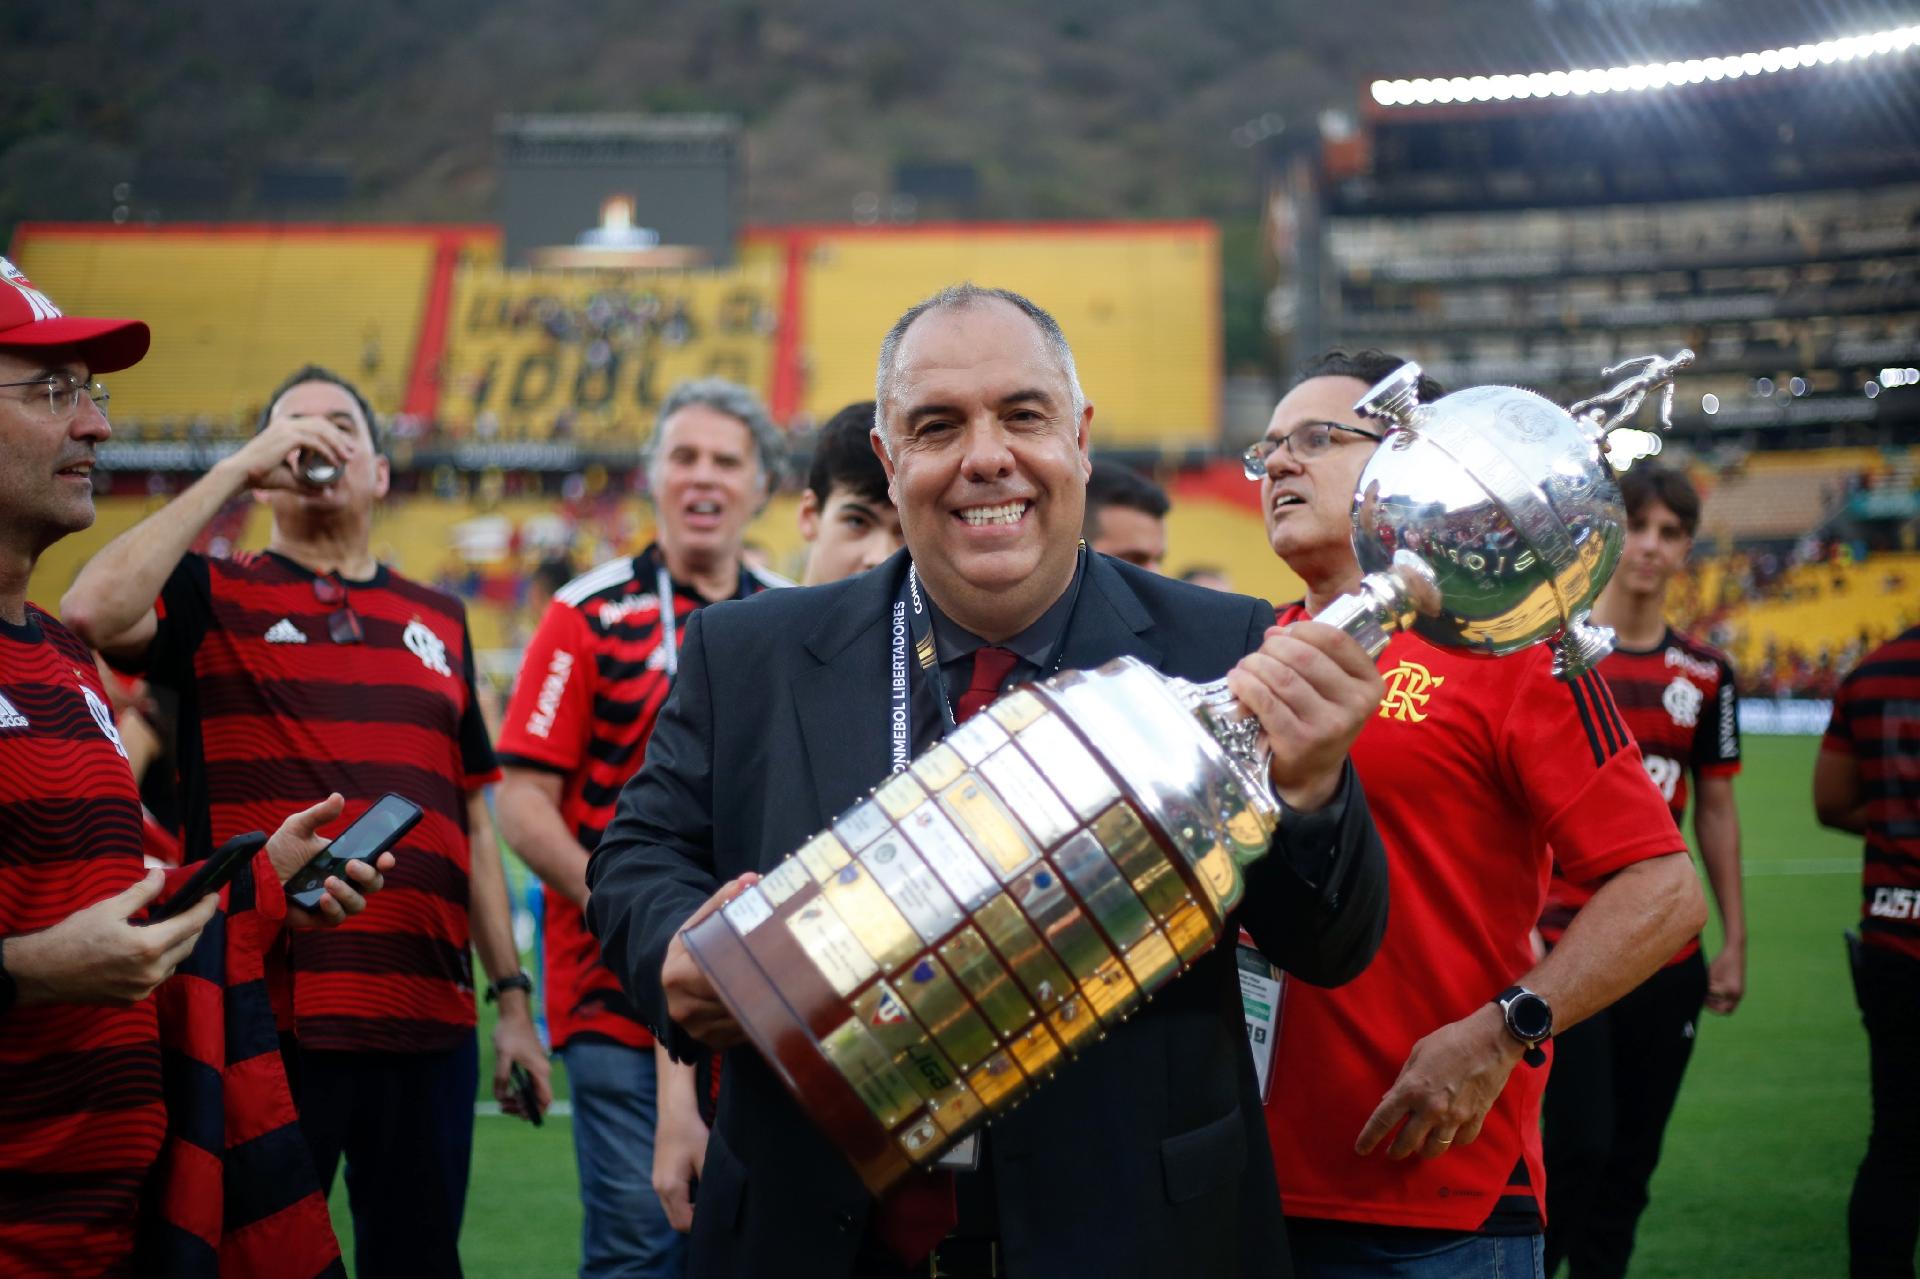 Guia do Mundial de Clubes: Flamengo pede o mundo de novo após título da  Libertadores - Flamengo - Extra Online